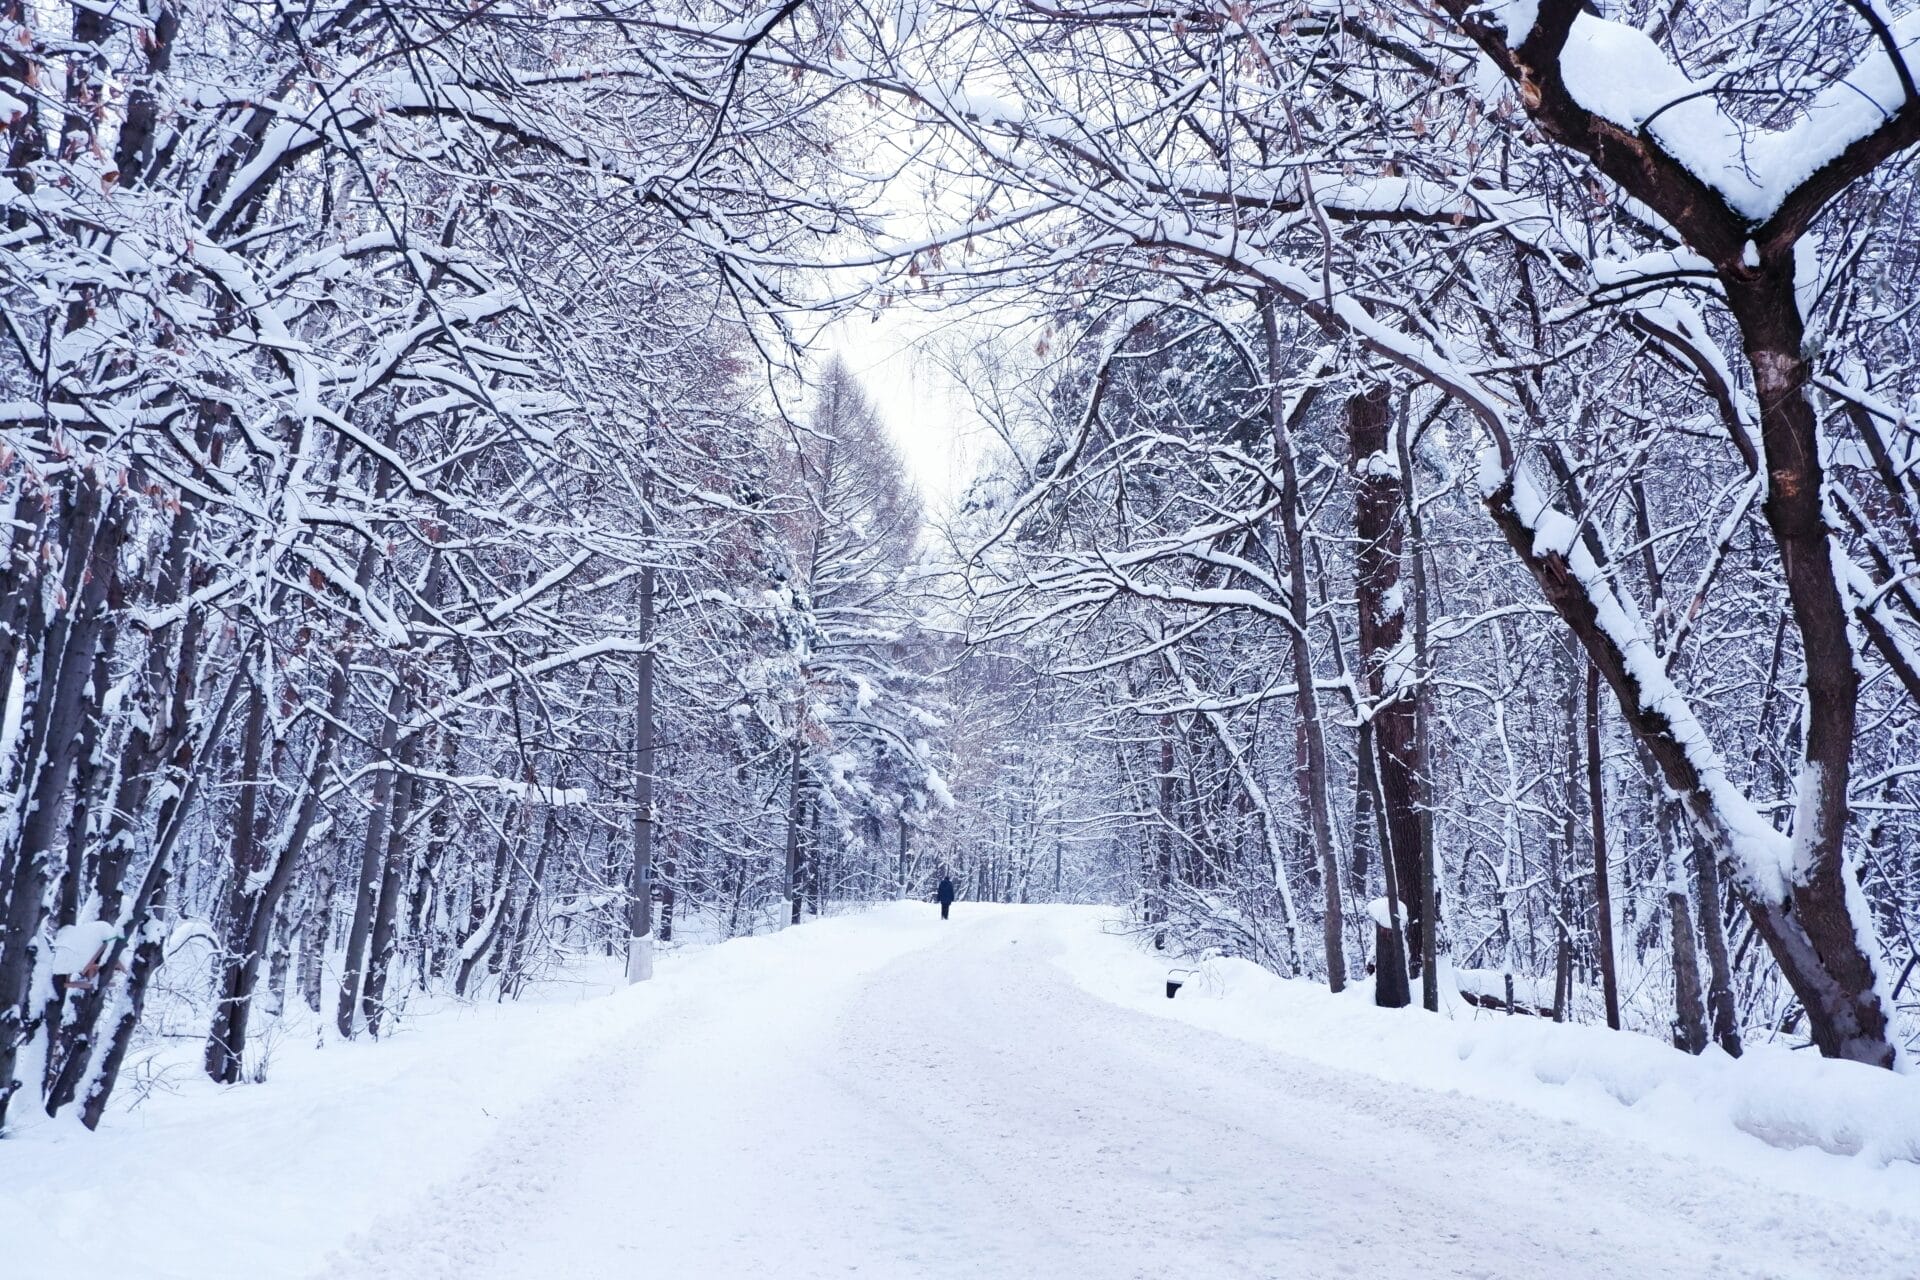 Walking through winter